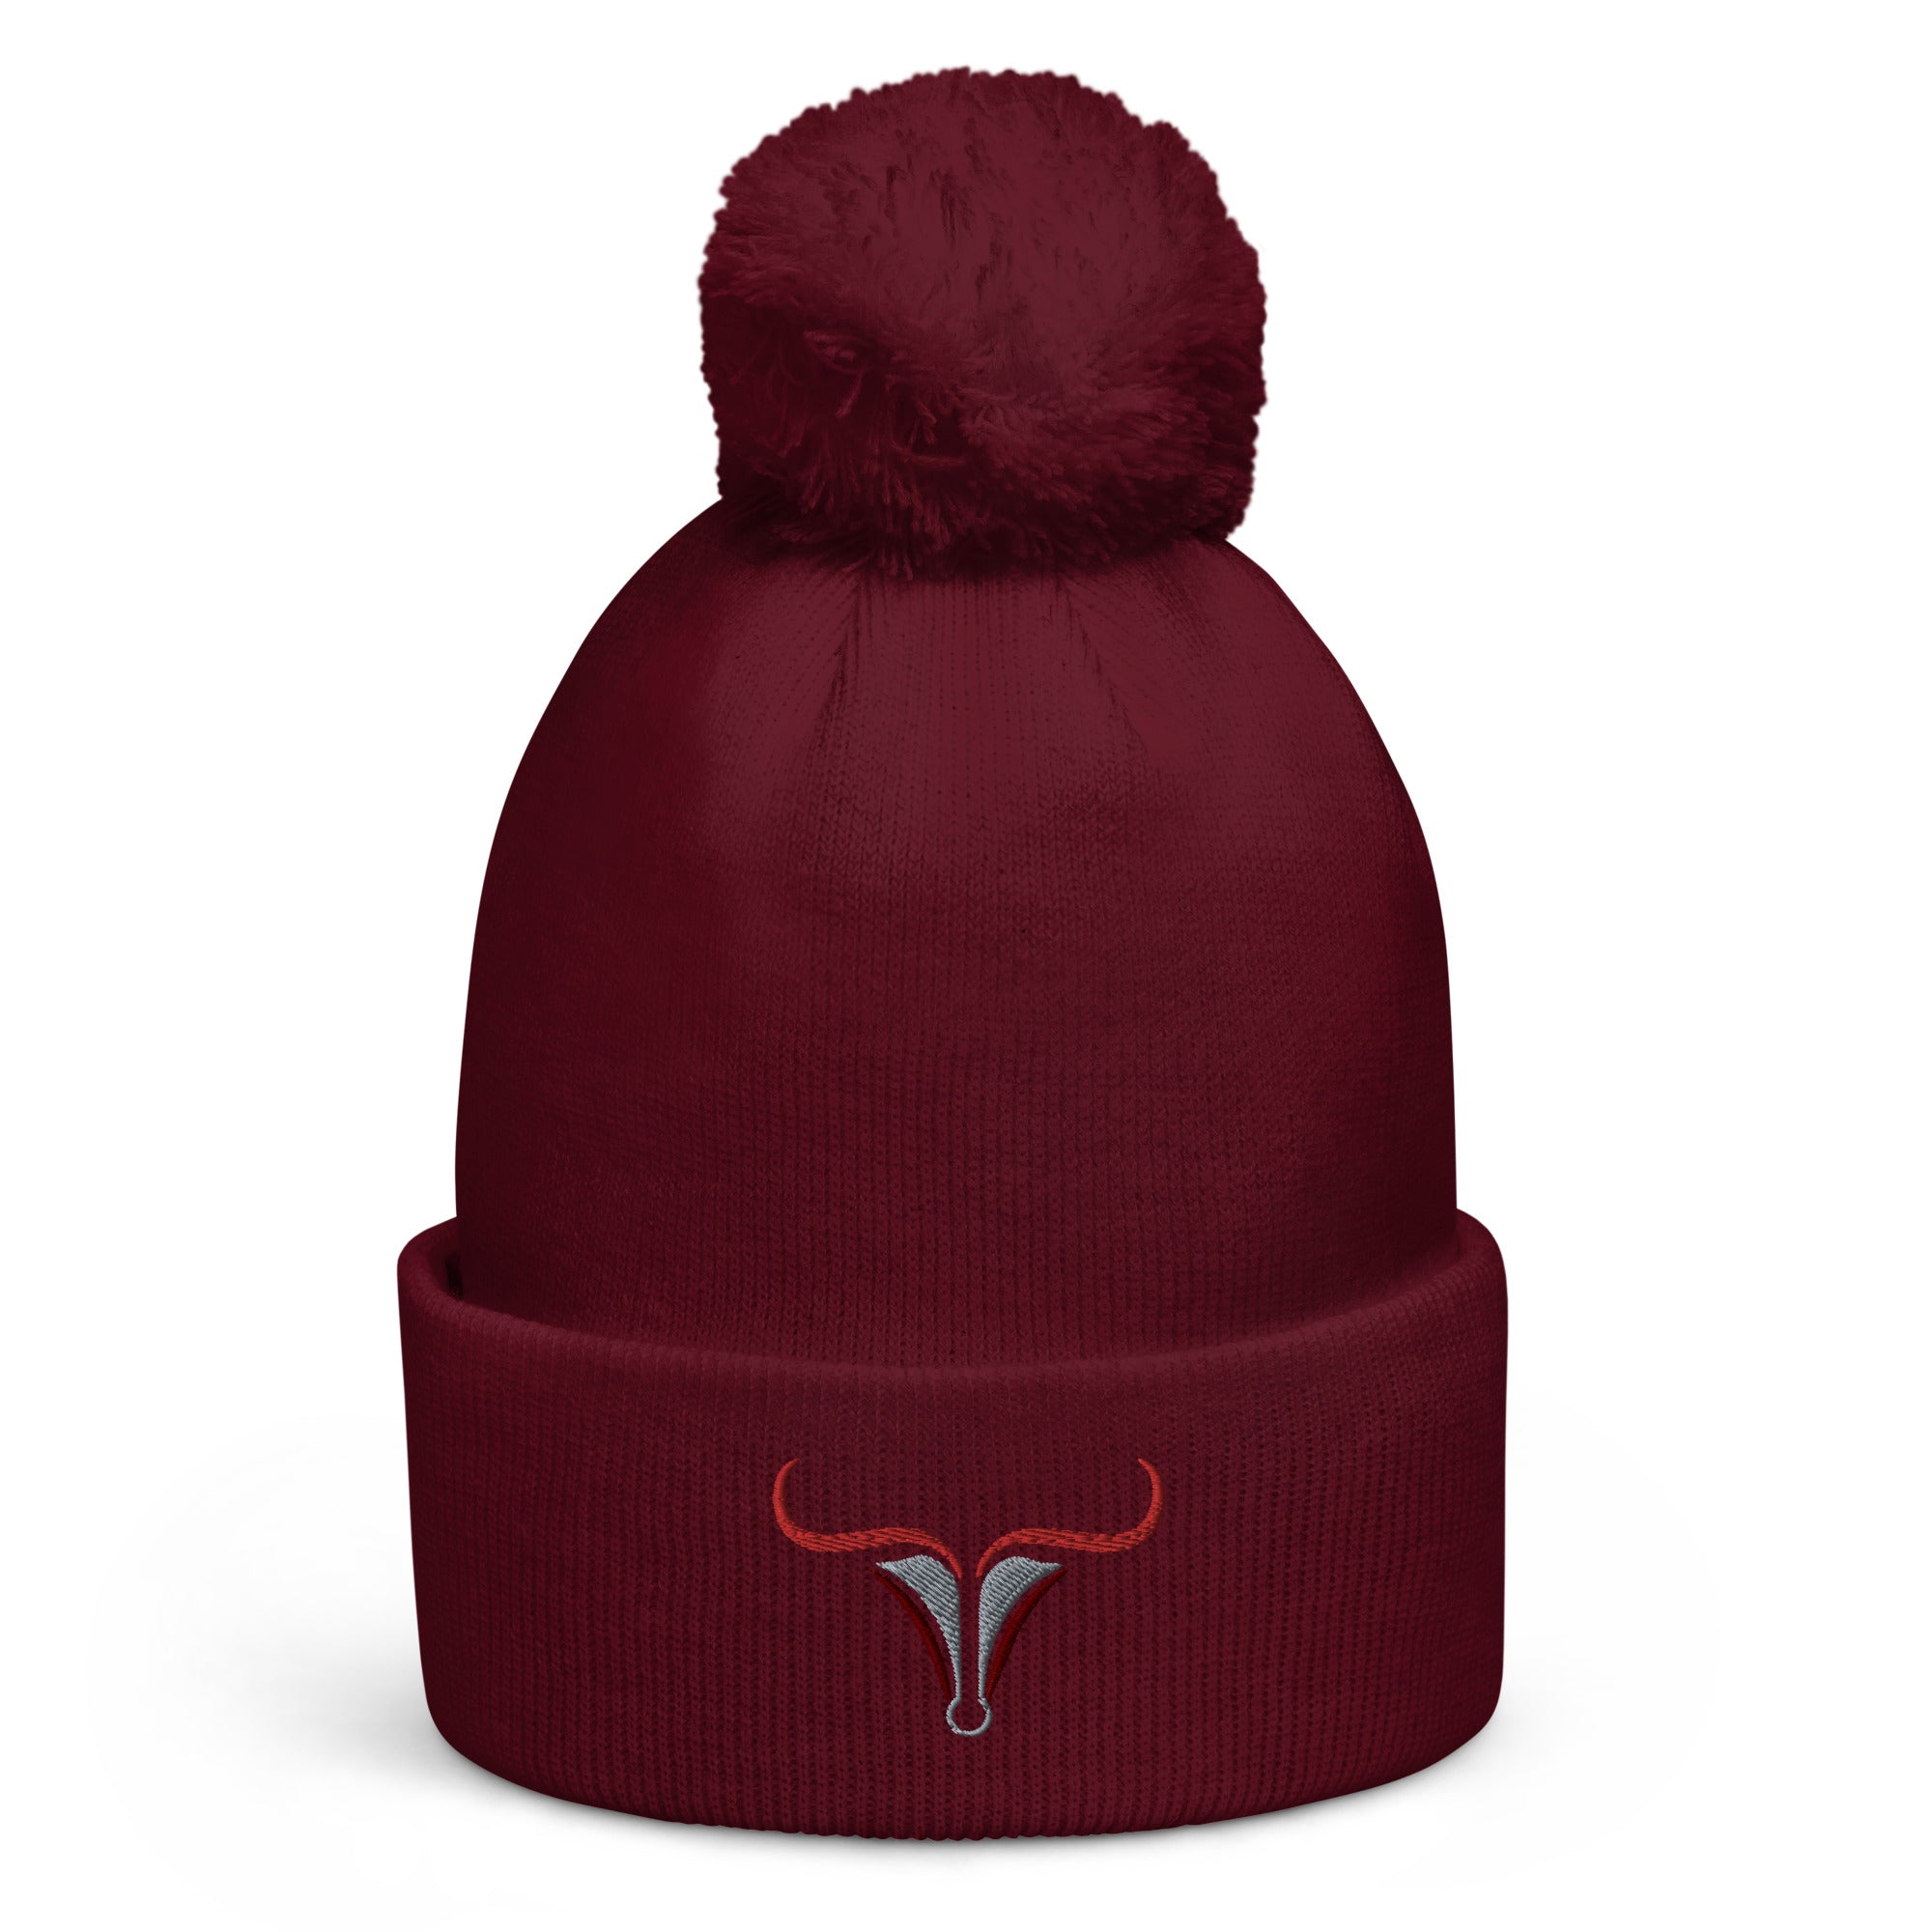 Taurus Pom Pom Beanie Hat